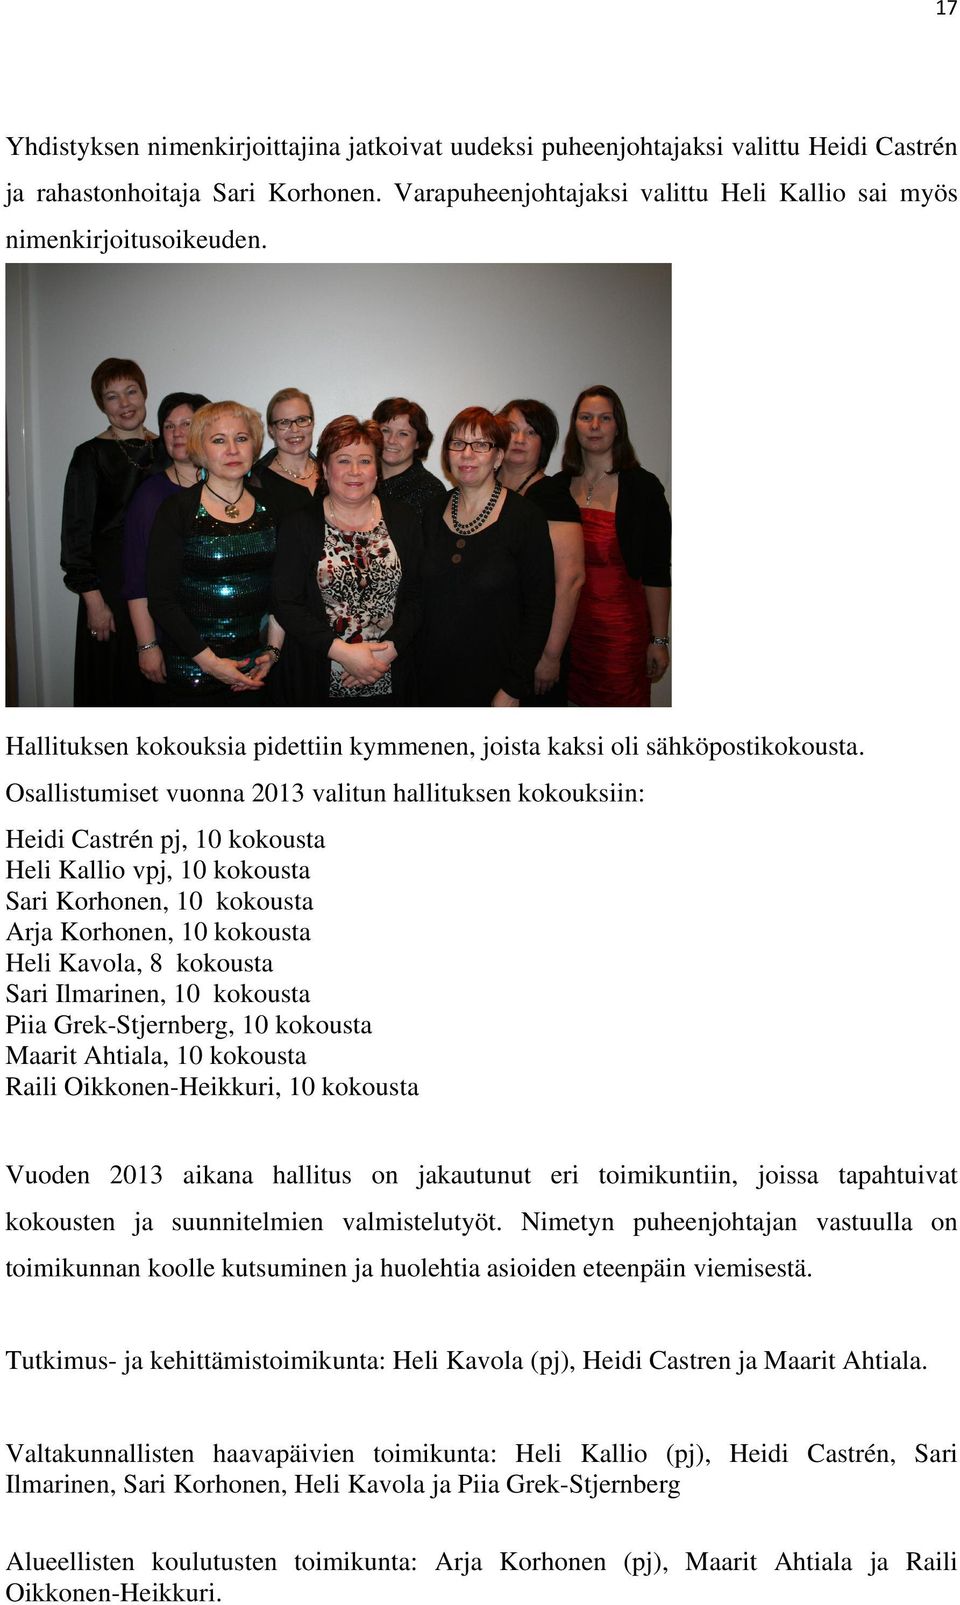 Osallistumiset vuonna 2013 valitun hallituksen kokouksiin: Heidi Castrén pj, 10 kokousta Heli Kallio vpj, 10 kokousta Sari Korhonen, 10 kokousta Arja Korhonen, 10 kokousta Heli Kavola, 8 kokousta